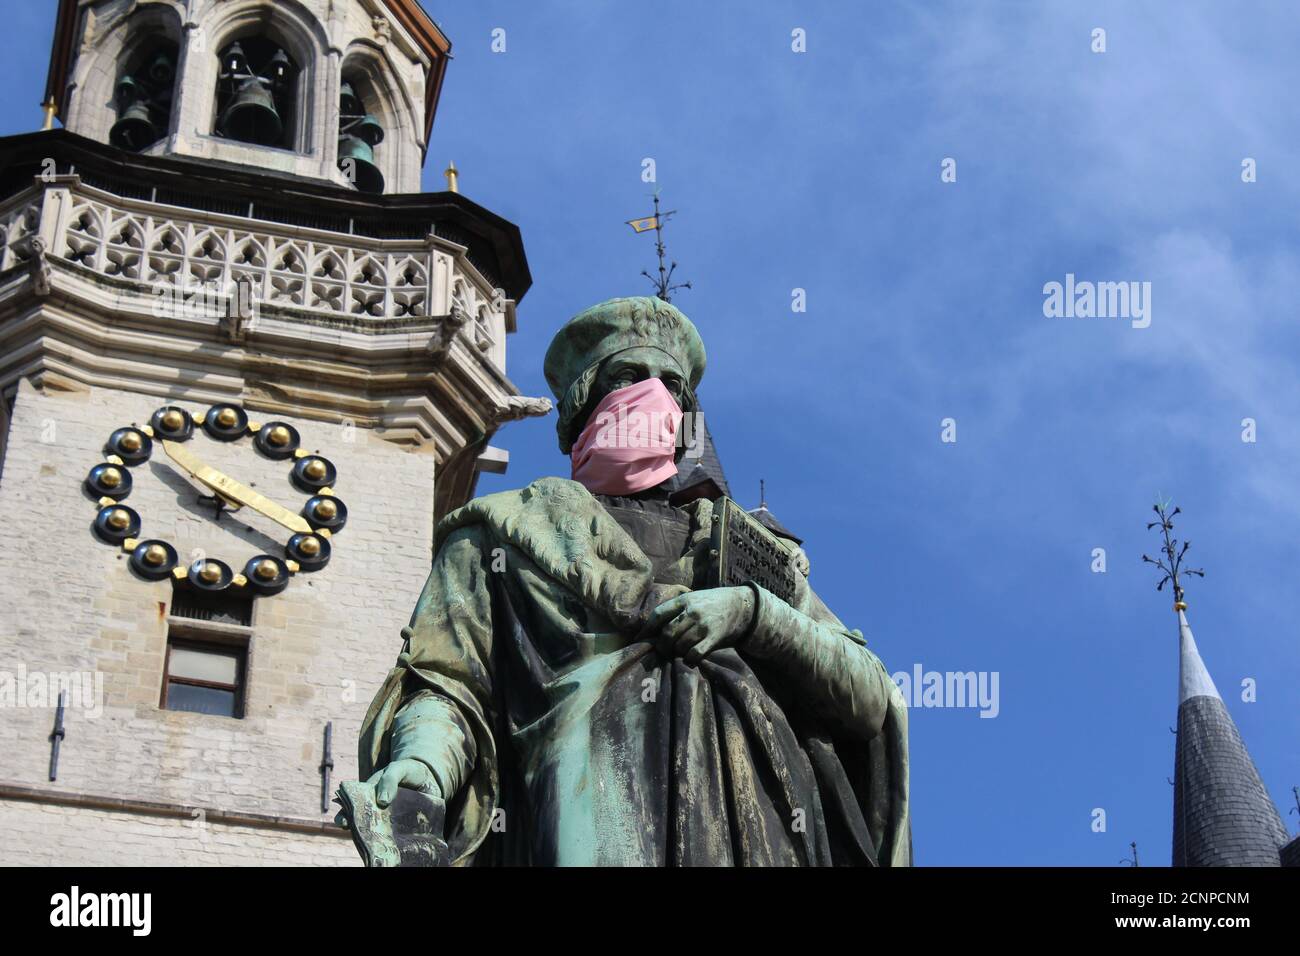 AALST, BELGIO, 18 SETTEMBRE 2020: La statua Aalst simbolo di Dirk Martens indossando una maschera a bocca. Un divertente promemoria per la gente del posto per rispettare COVID Foto Stock